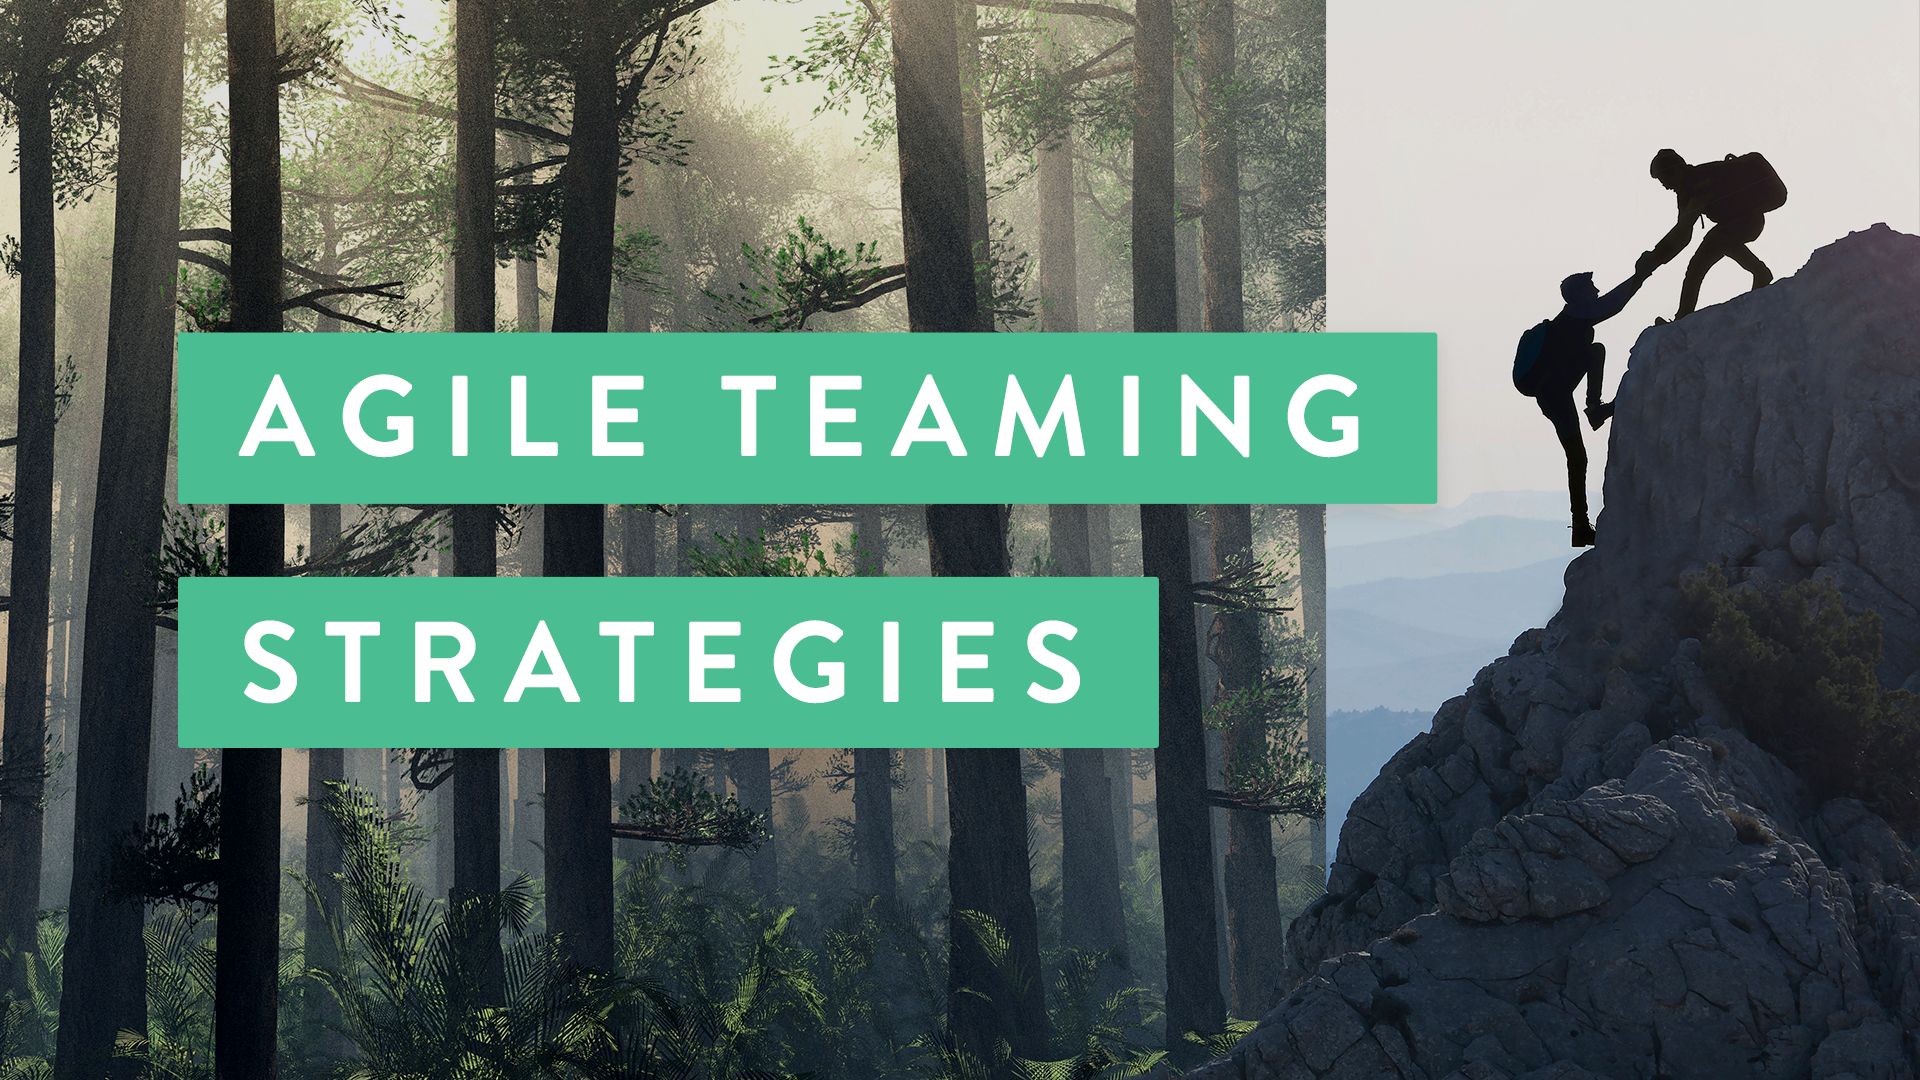 Agile Teaming Strategies